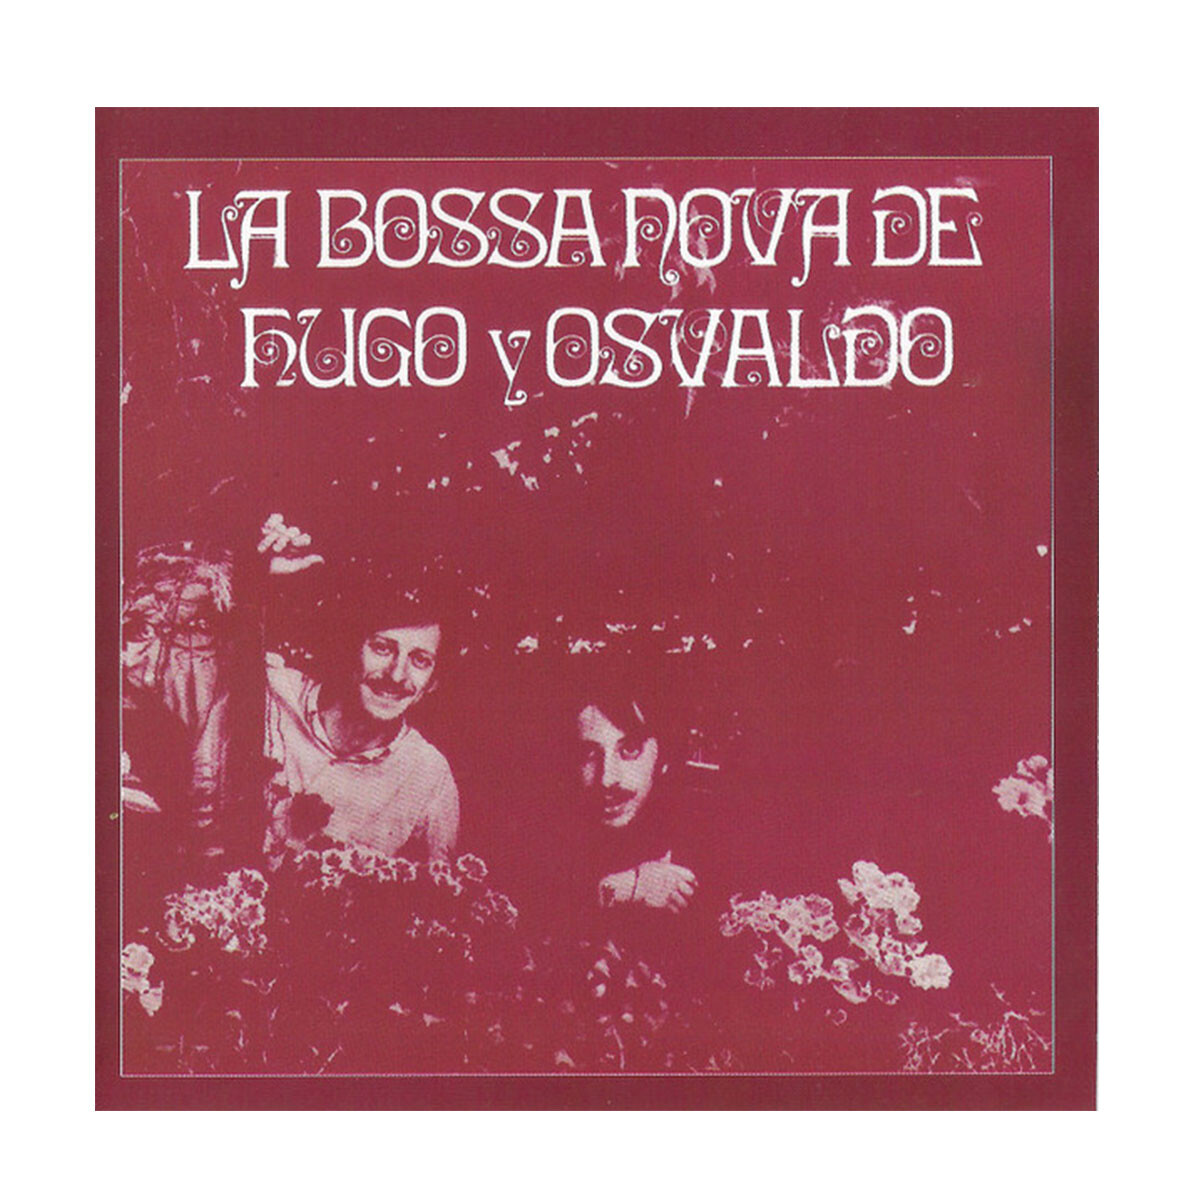 Hugo Y Osvaldo Fattoruso La Bossa Nova De Hugo Y Osvaldo - Vinilo 